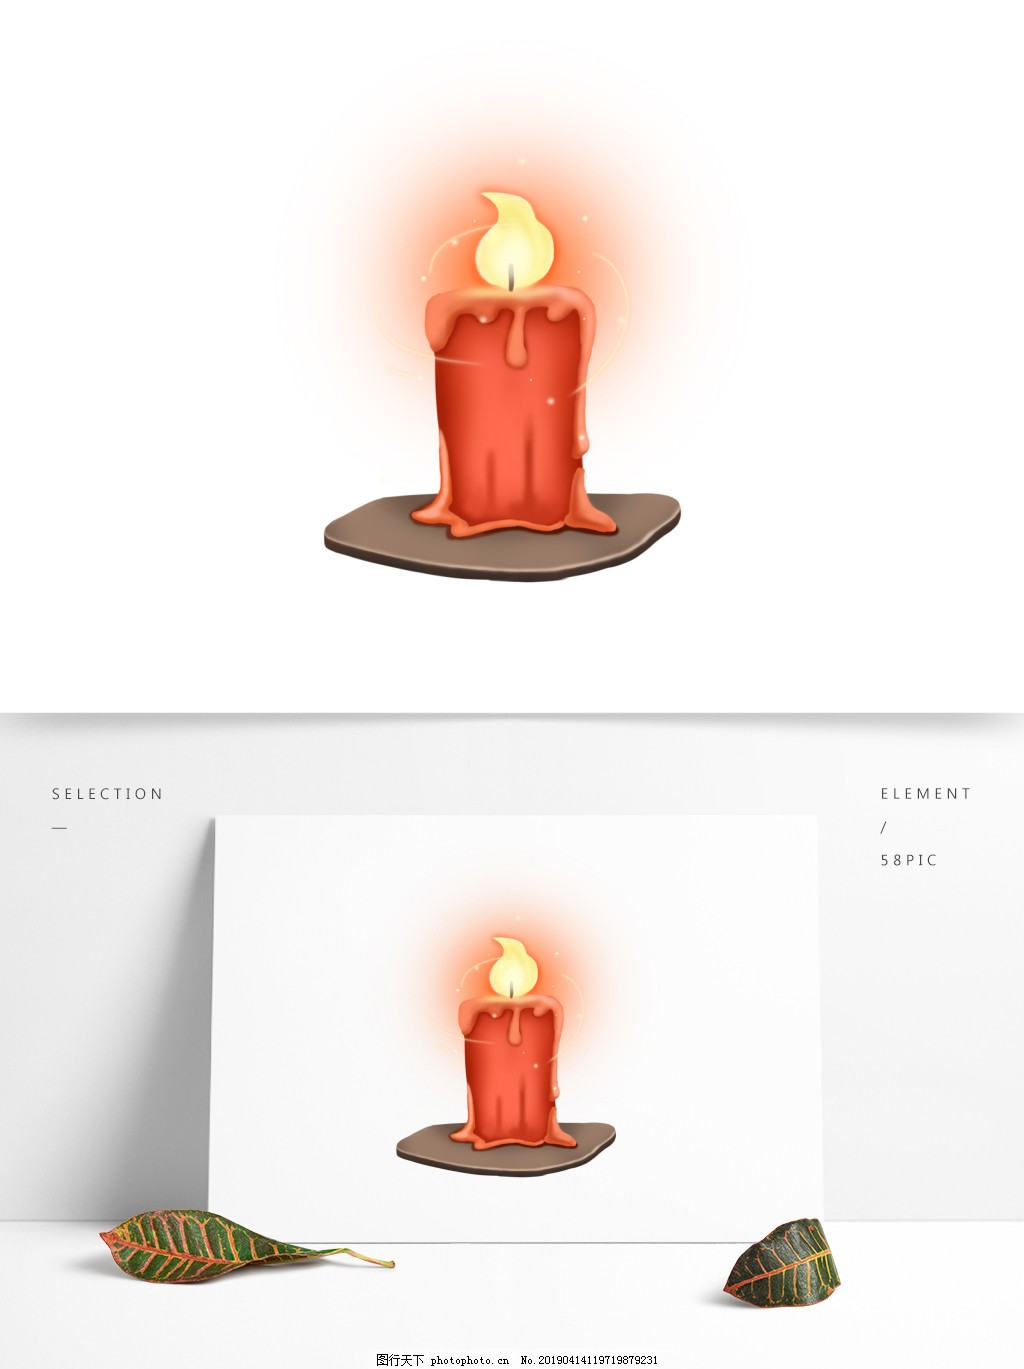 ‘~蜡烛花灯祈祷UI古风元素图片_装饰图案_平面创作元素-  ~’ 的图片